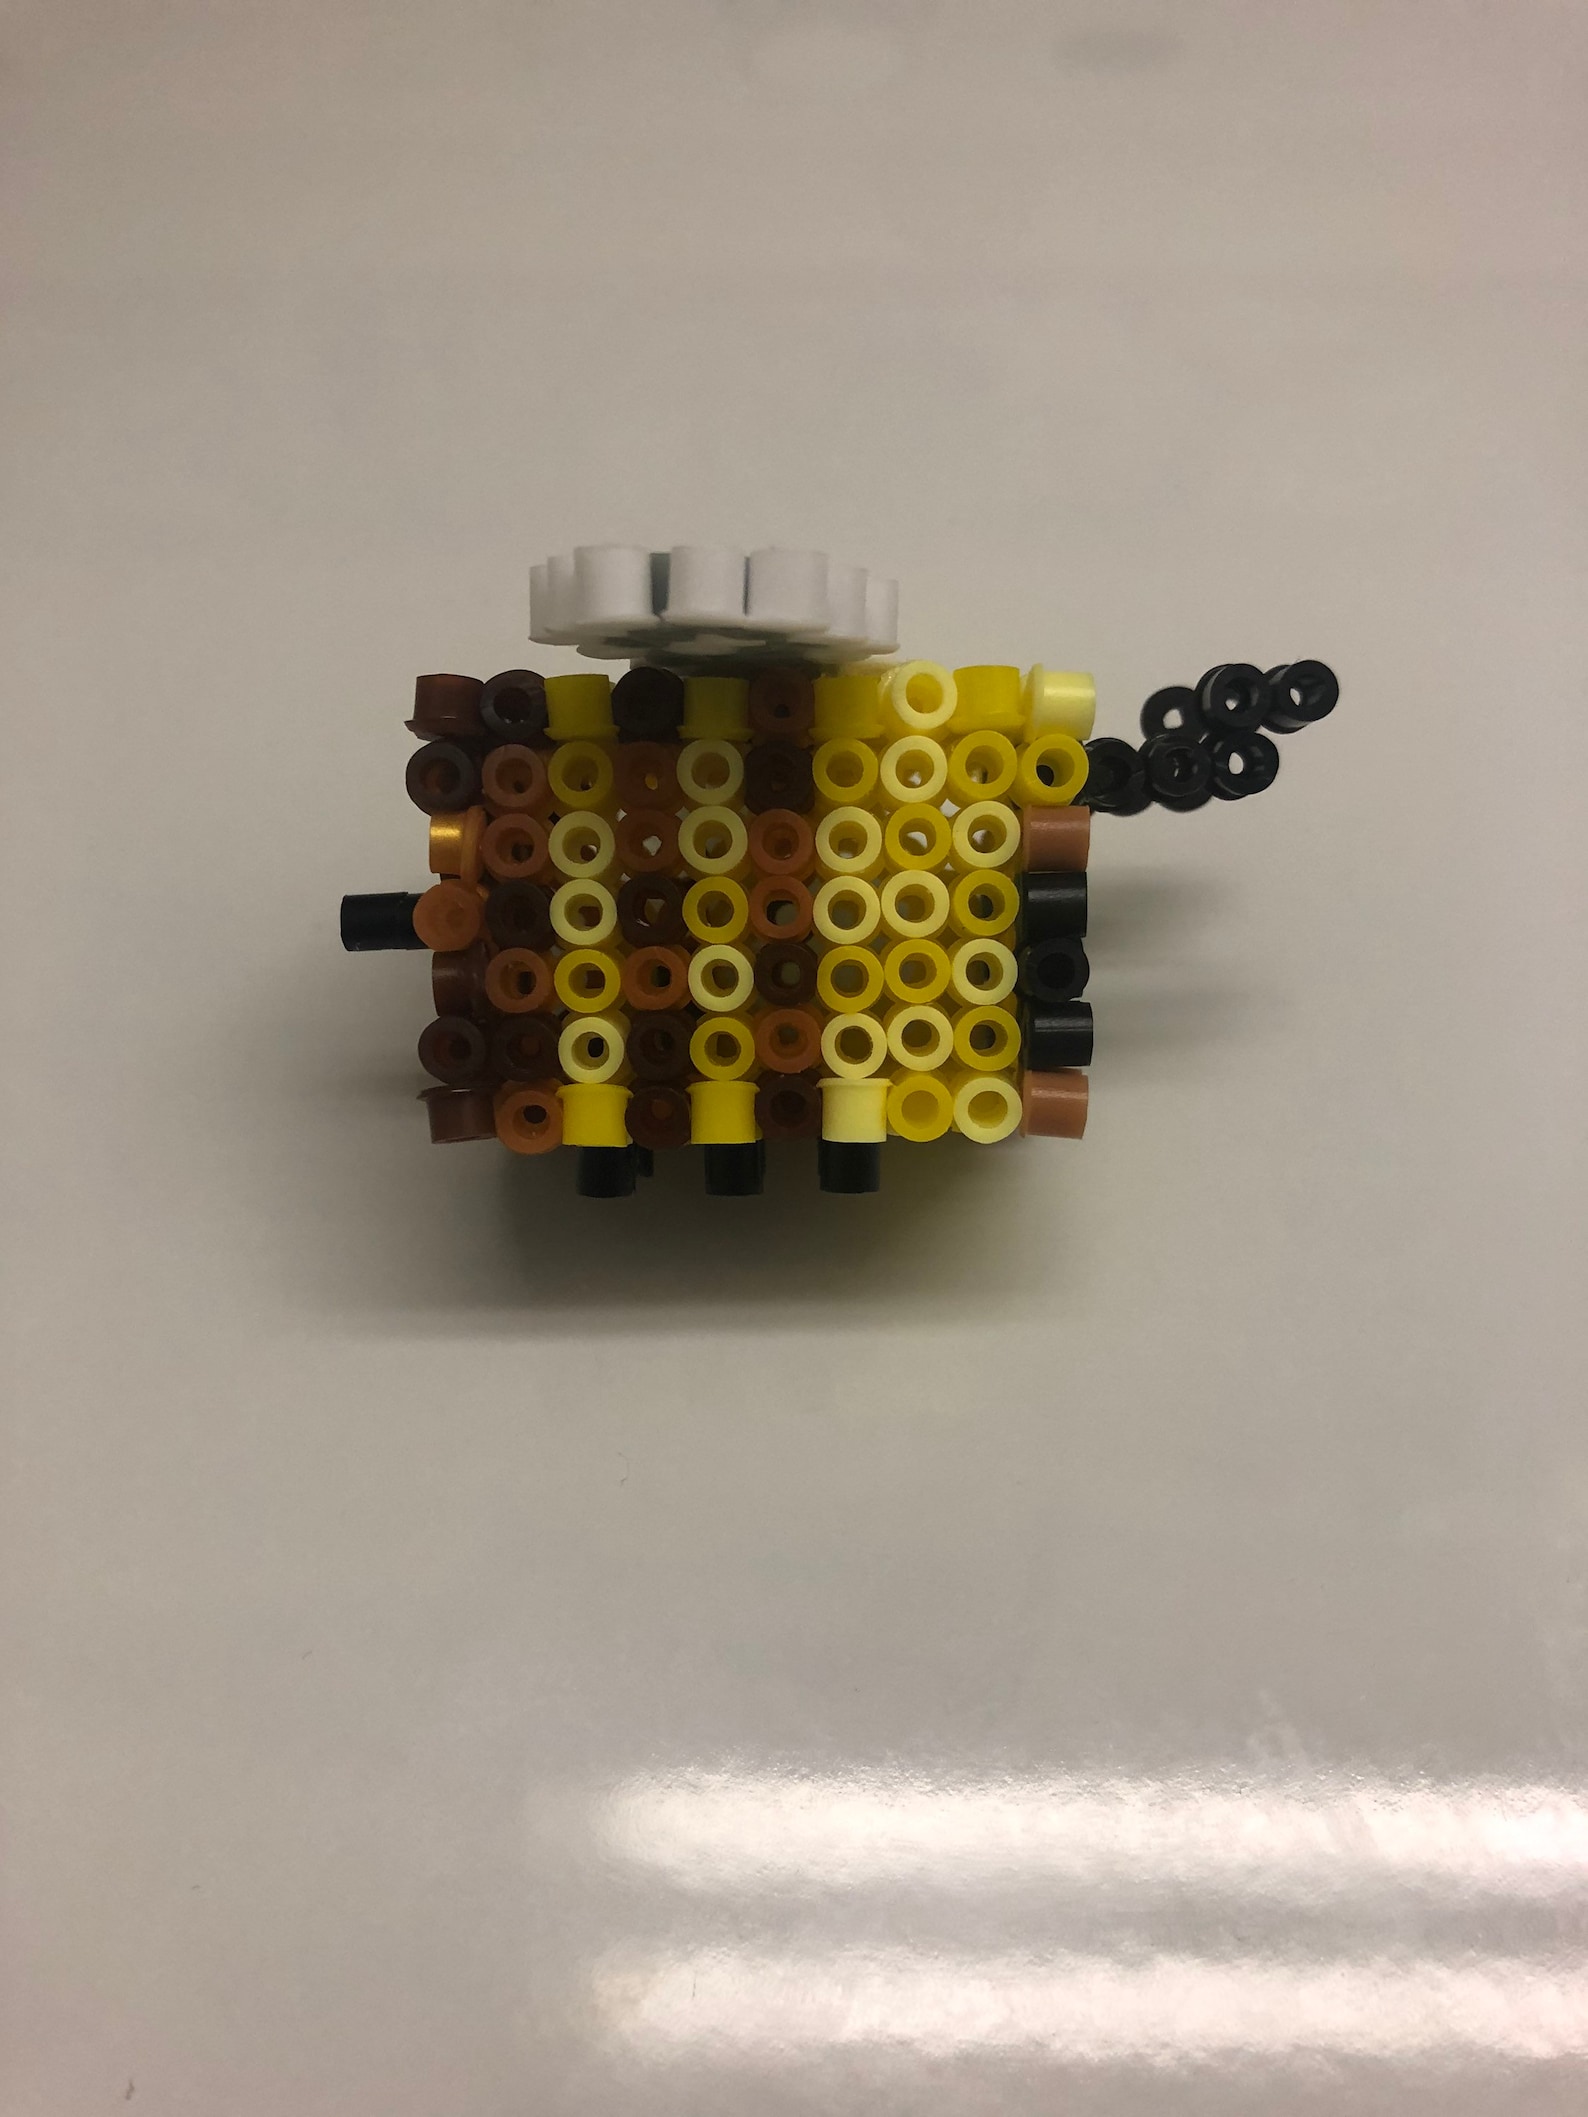 minecraft-bee-perler-beads-3d-template